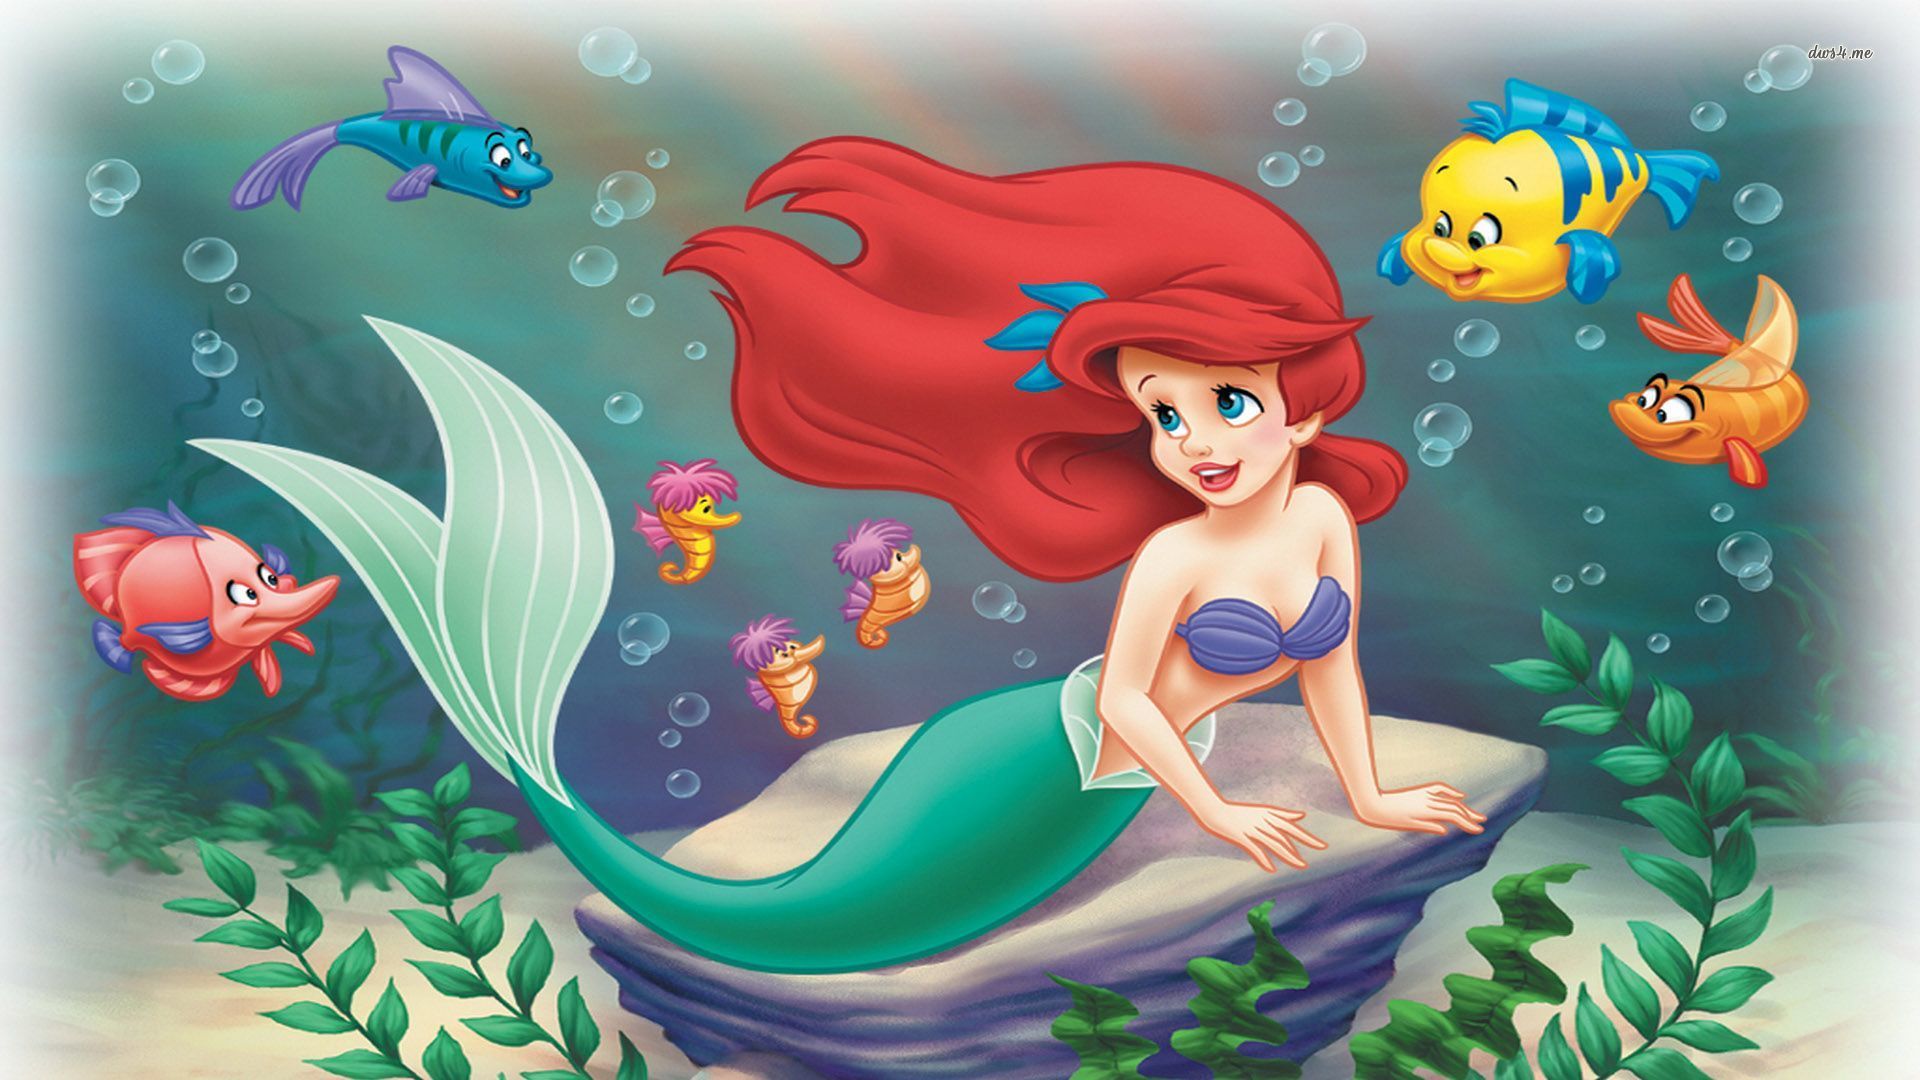 Ariel The Little Mermaid Hd - 1920x1080 Wallpaper 